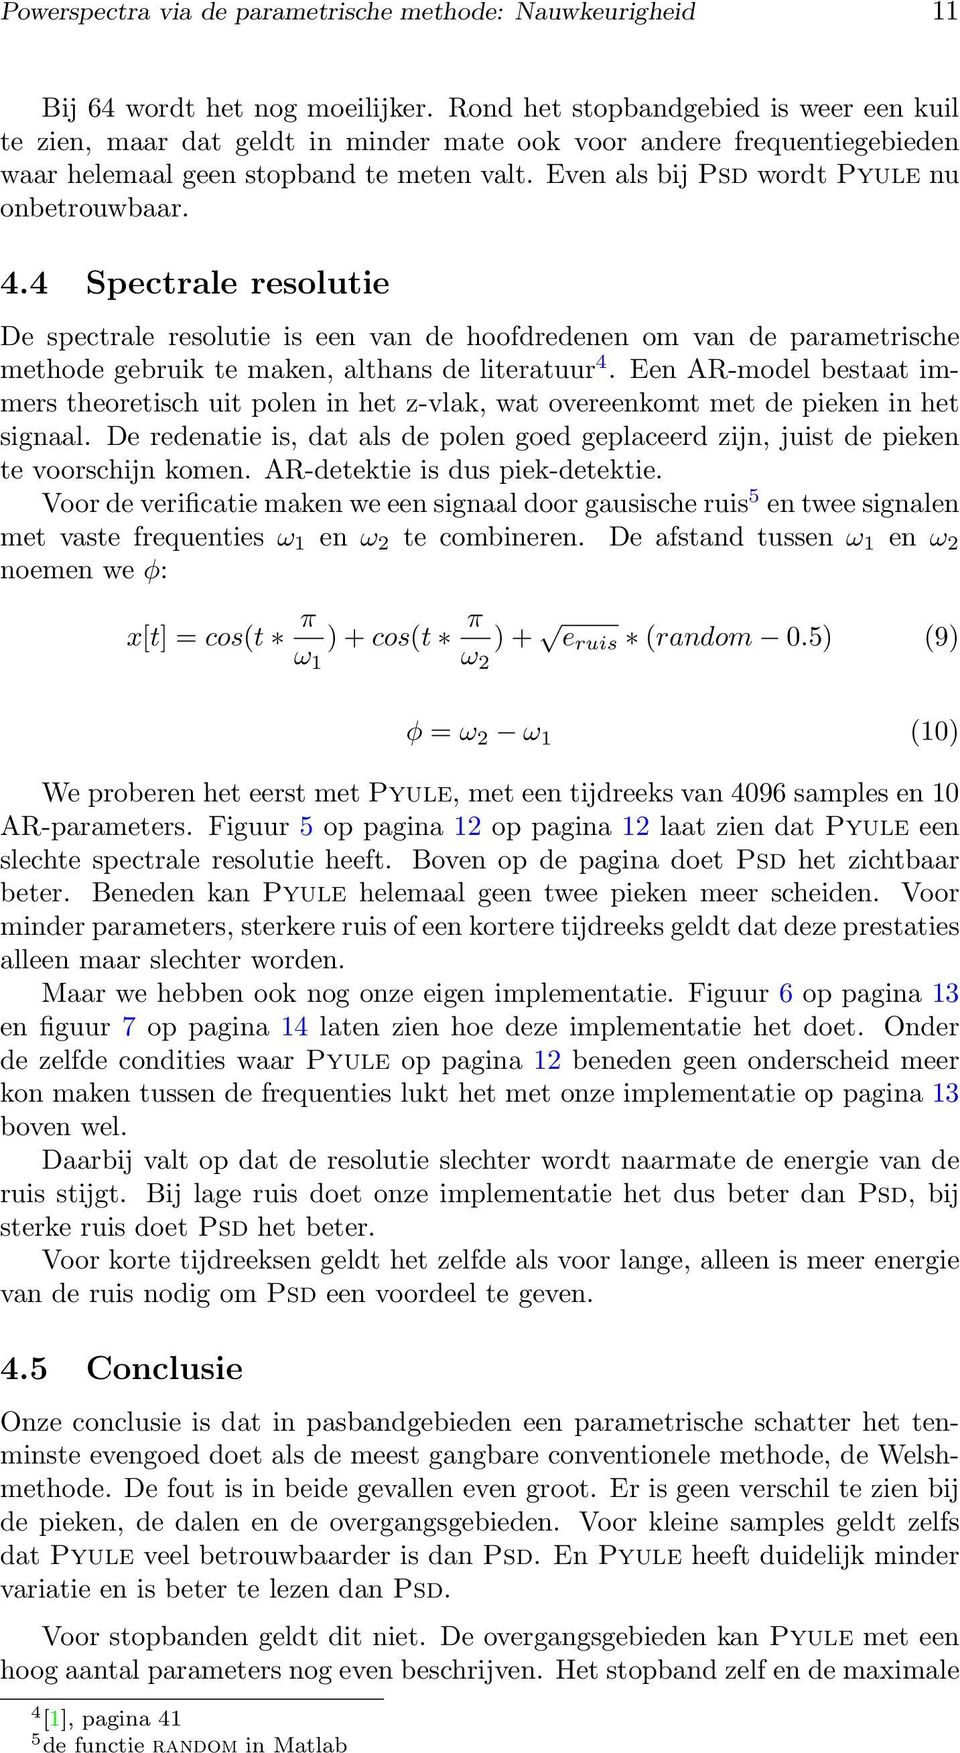 Even als bij Psd wordt Pyule nu onbetrouwbaar. 4.4 Spectrale resolutie De spectrale resolutie is een van de hoofdredenen om van de parametrische methode gebruik te maken, althans de literatuur 4.